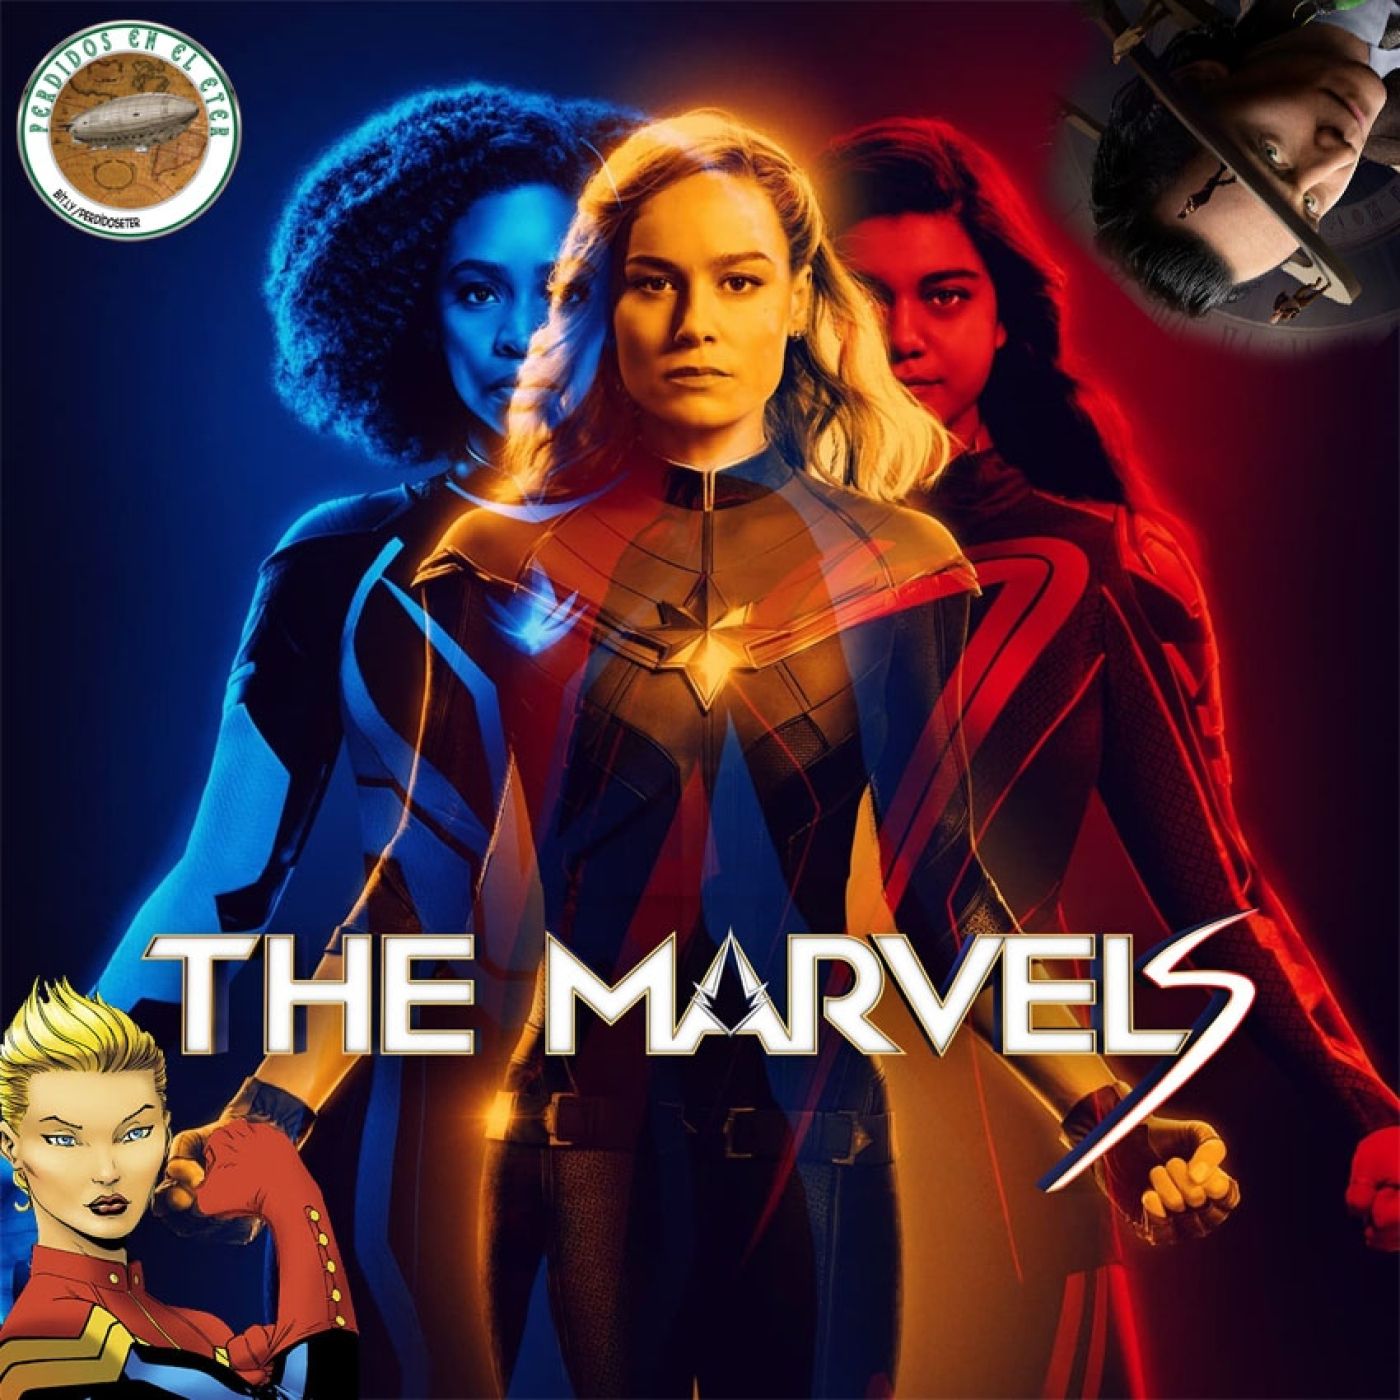 S21 Ep577: Perdidos En El Éter #557 - The Marvels (Cine y Comics) / Loki (Temporada 2)